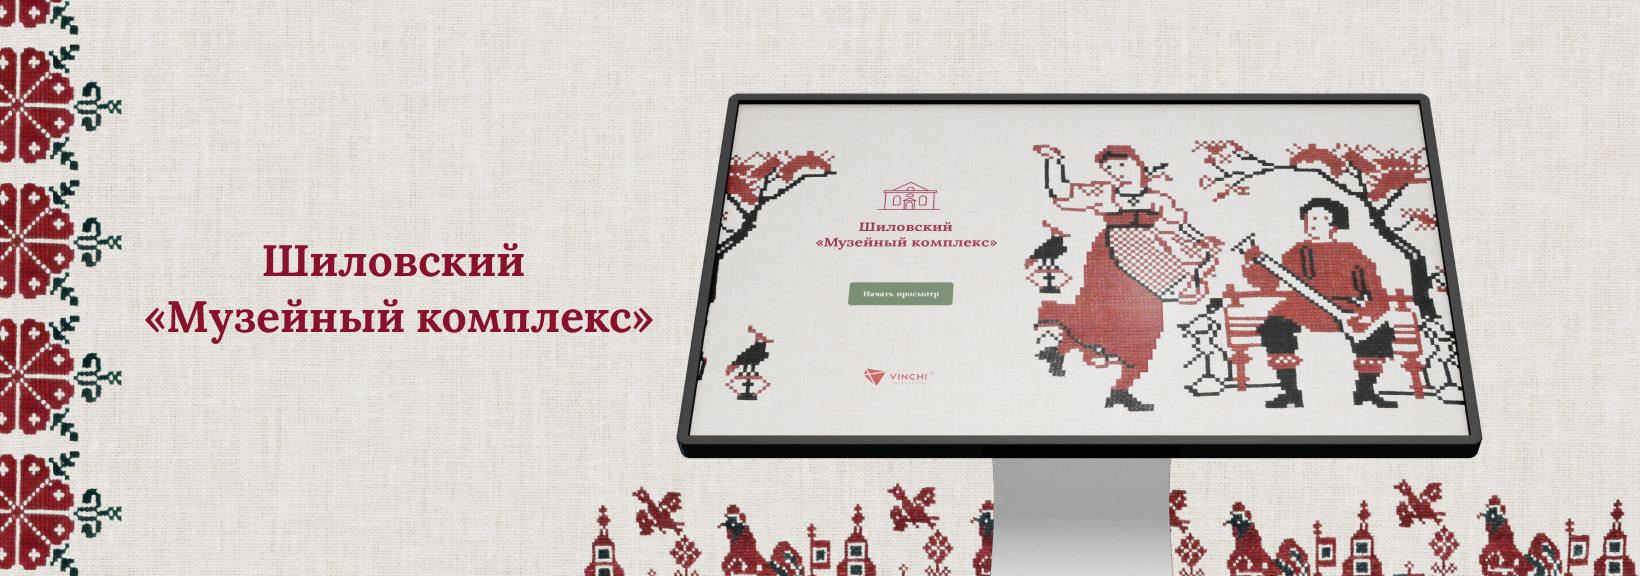 Игровое приложение для Шиловского музейного историко-культурного комплекса